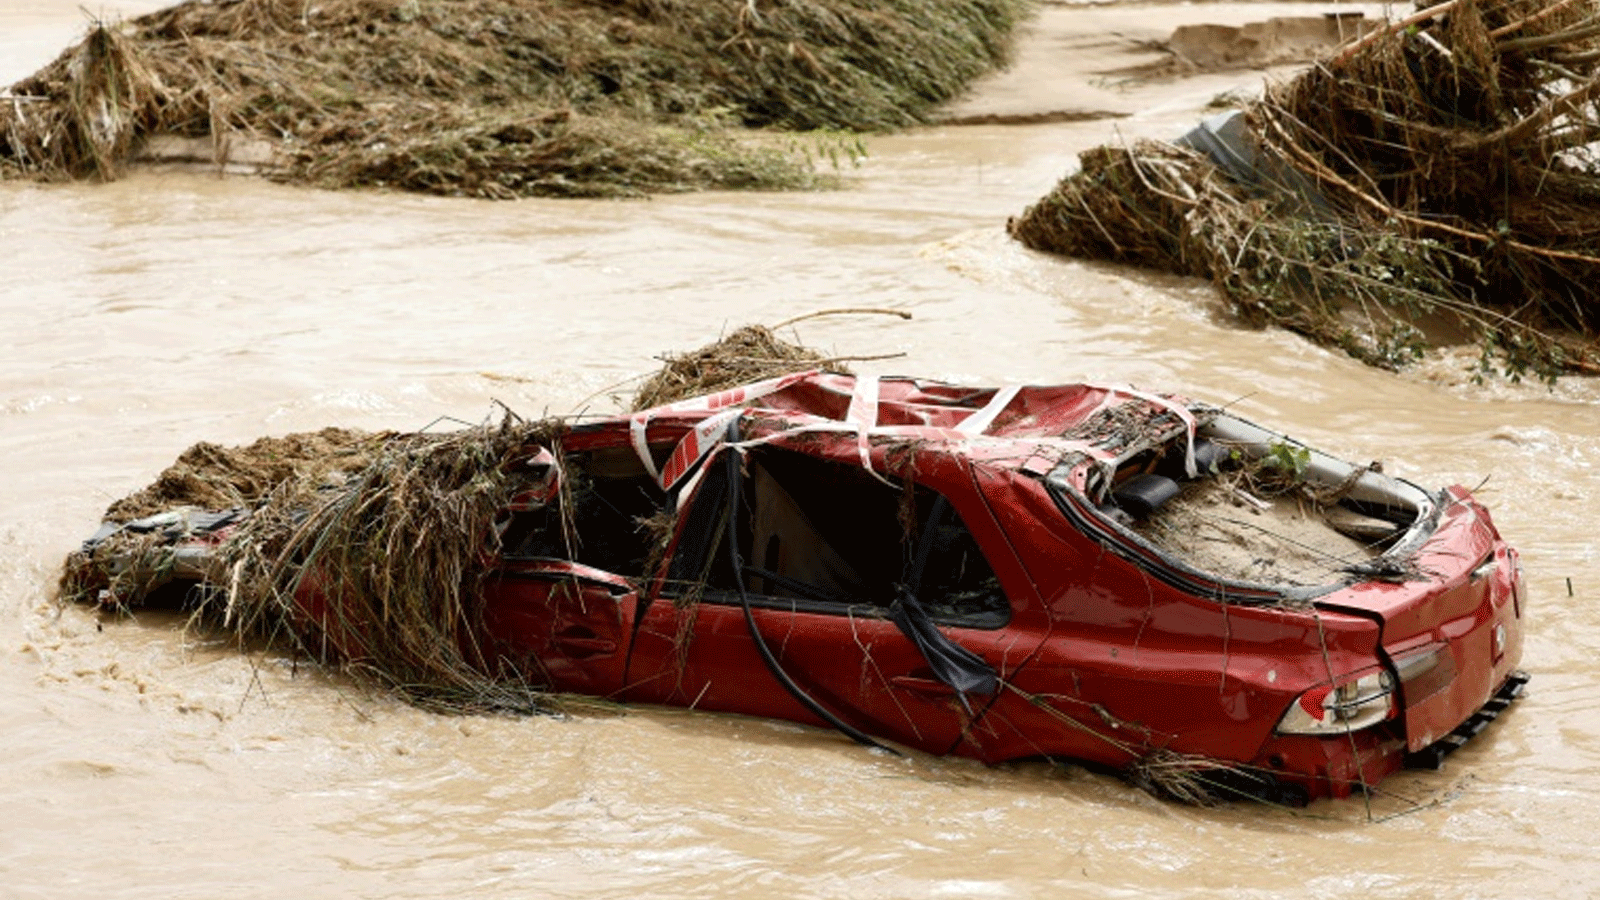 سيارة مدمرة وسط نهر في بلدة ألديا ديل فريسنو في منطقة مدريد، حيث تسببت الأمطار الغزيرة في فيضانات مفاجئة